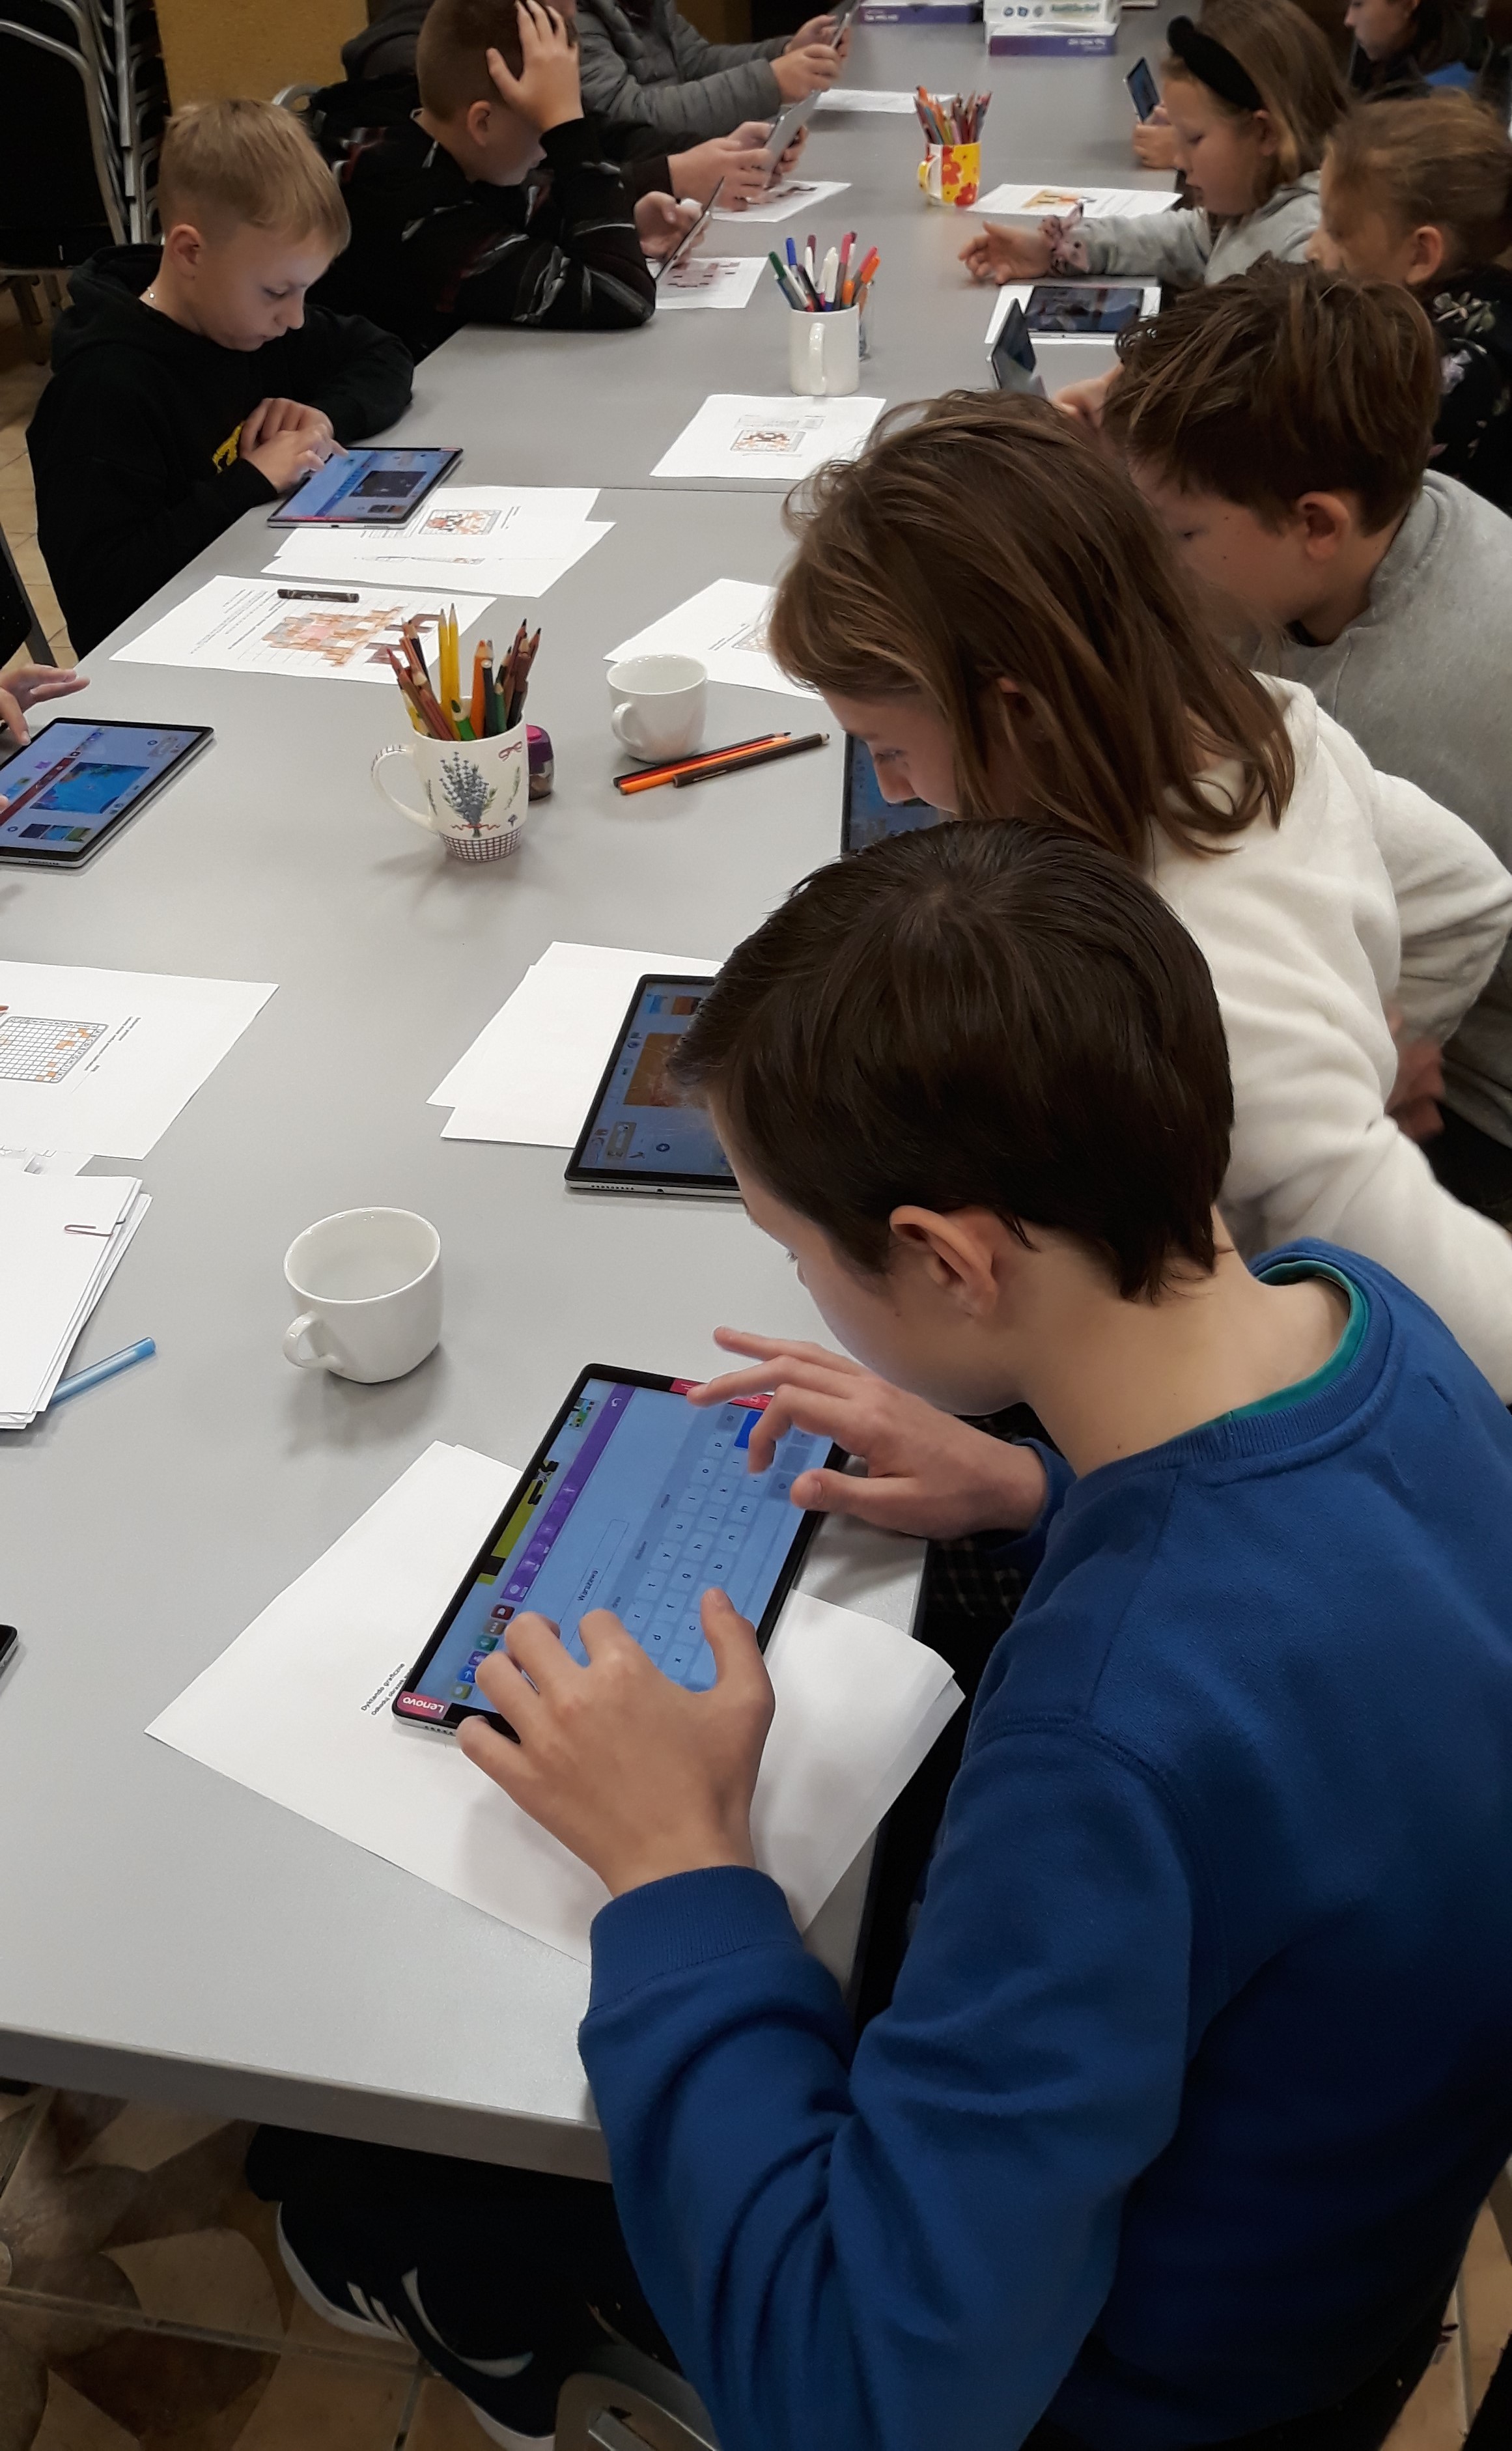 Dzieci siedzą przy stole, poznają na tablecie aplikacje do nauki programowania. Na stole widoczne kartki i przybory do rysowania.